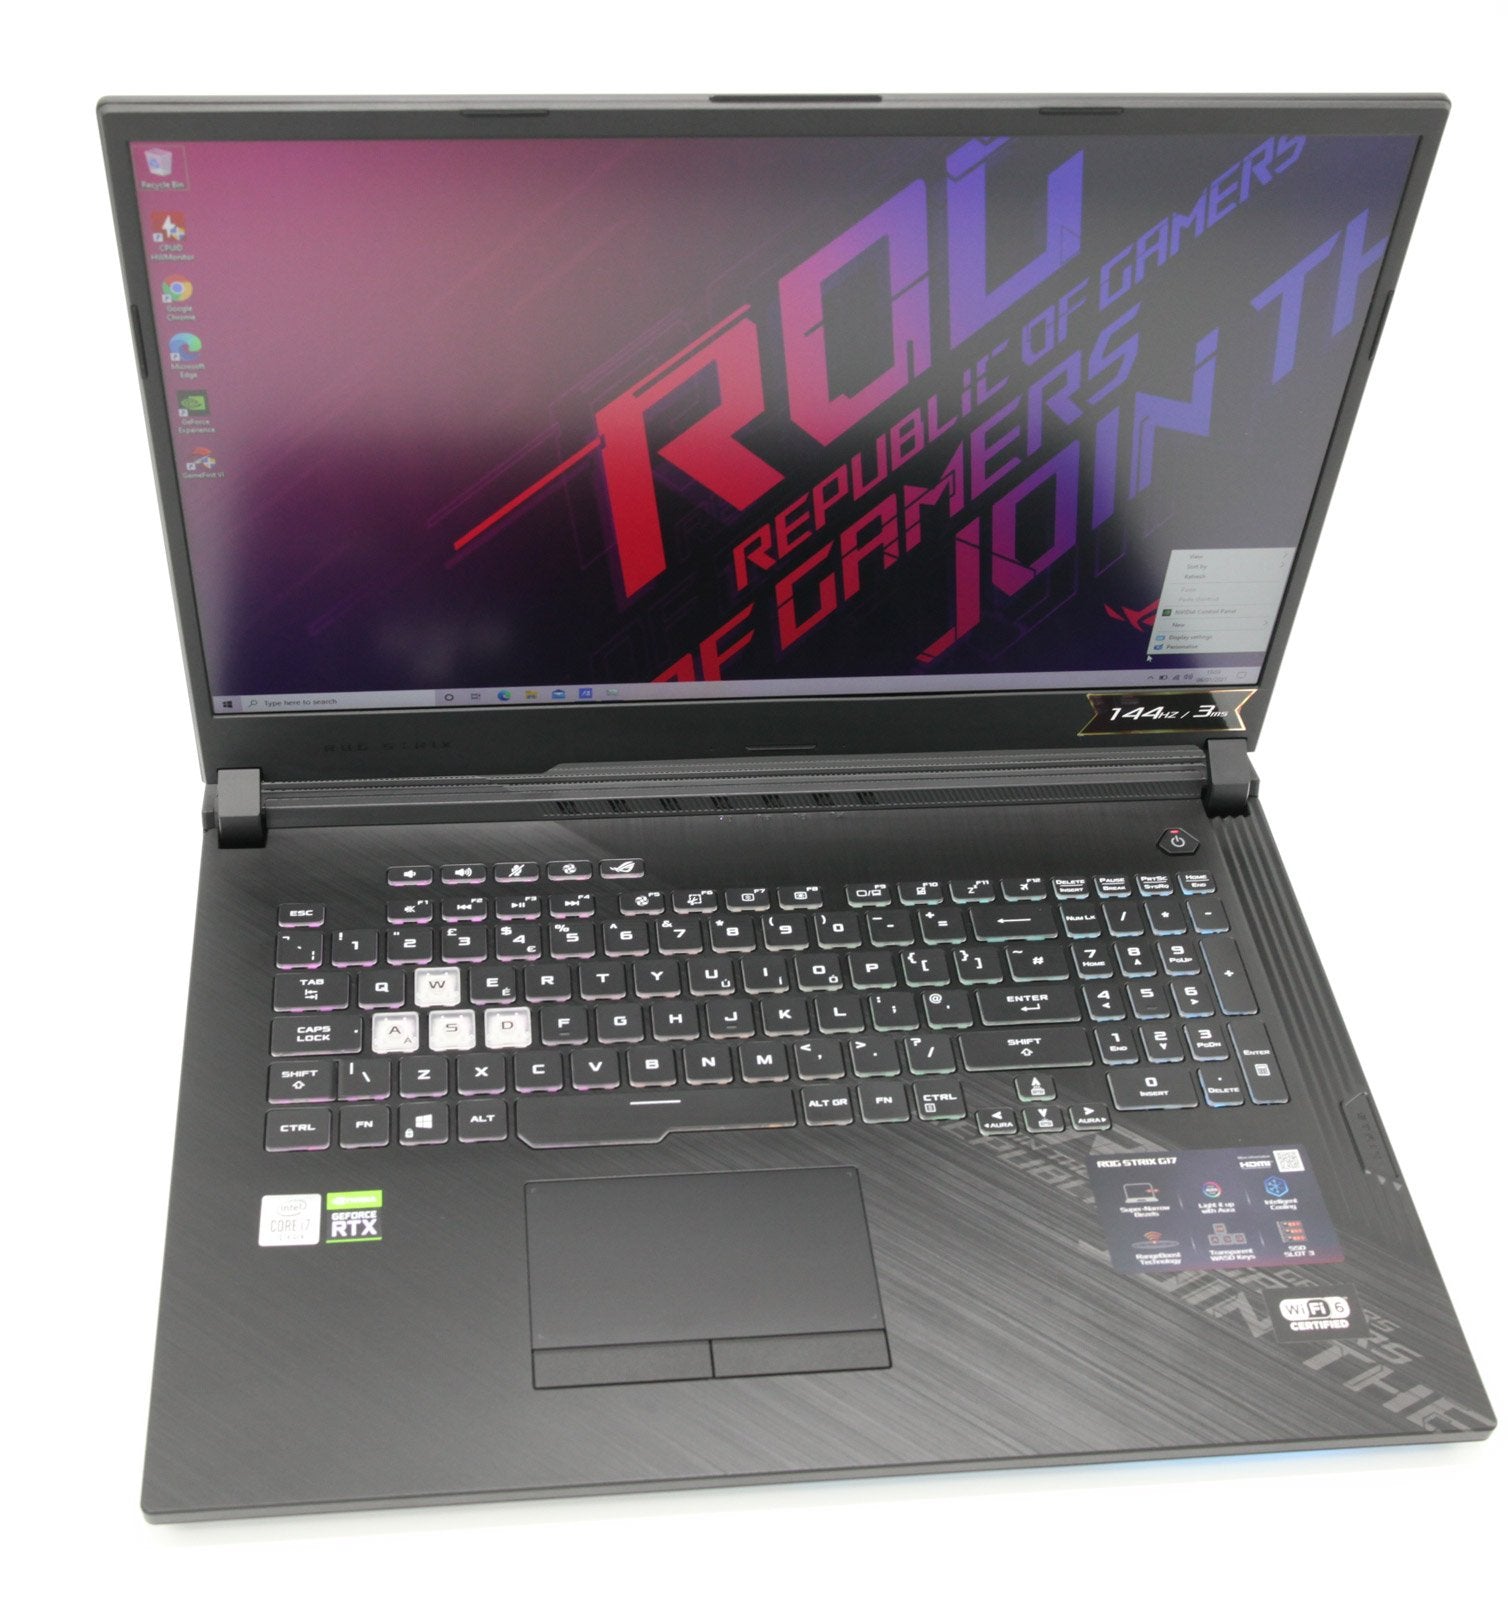 ASUS ROG Strix G17" Gaming Laptop: RTX 2070, 10th Gen i7 16GB RAM 512GB VAT - CruiseTech